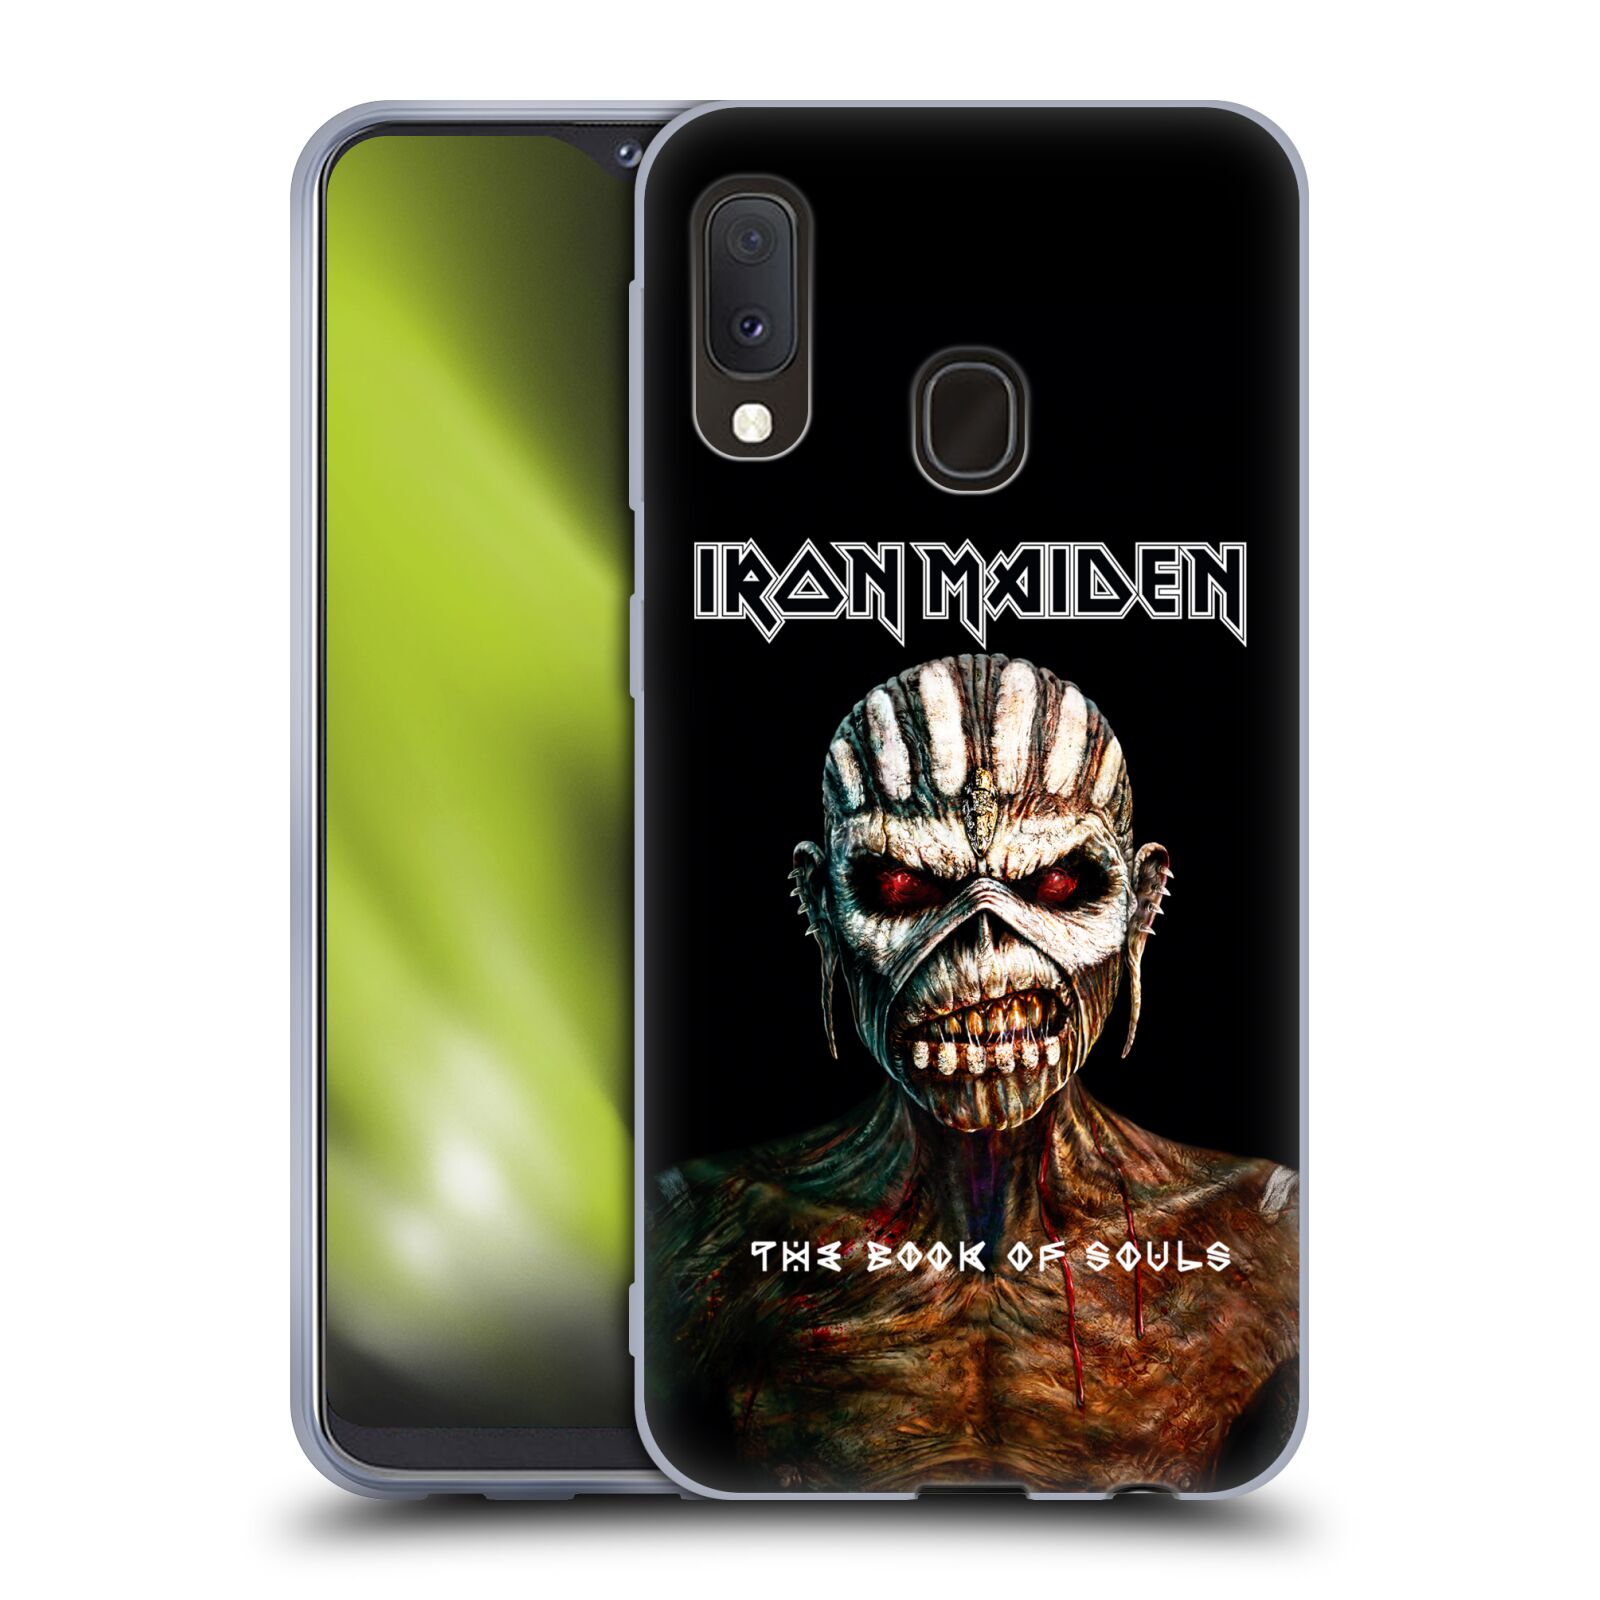 Silikonové pouzdro na mobil Samsung Galaxy A20e - Head Case - Iron Maiden - The Book Of Souls